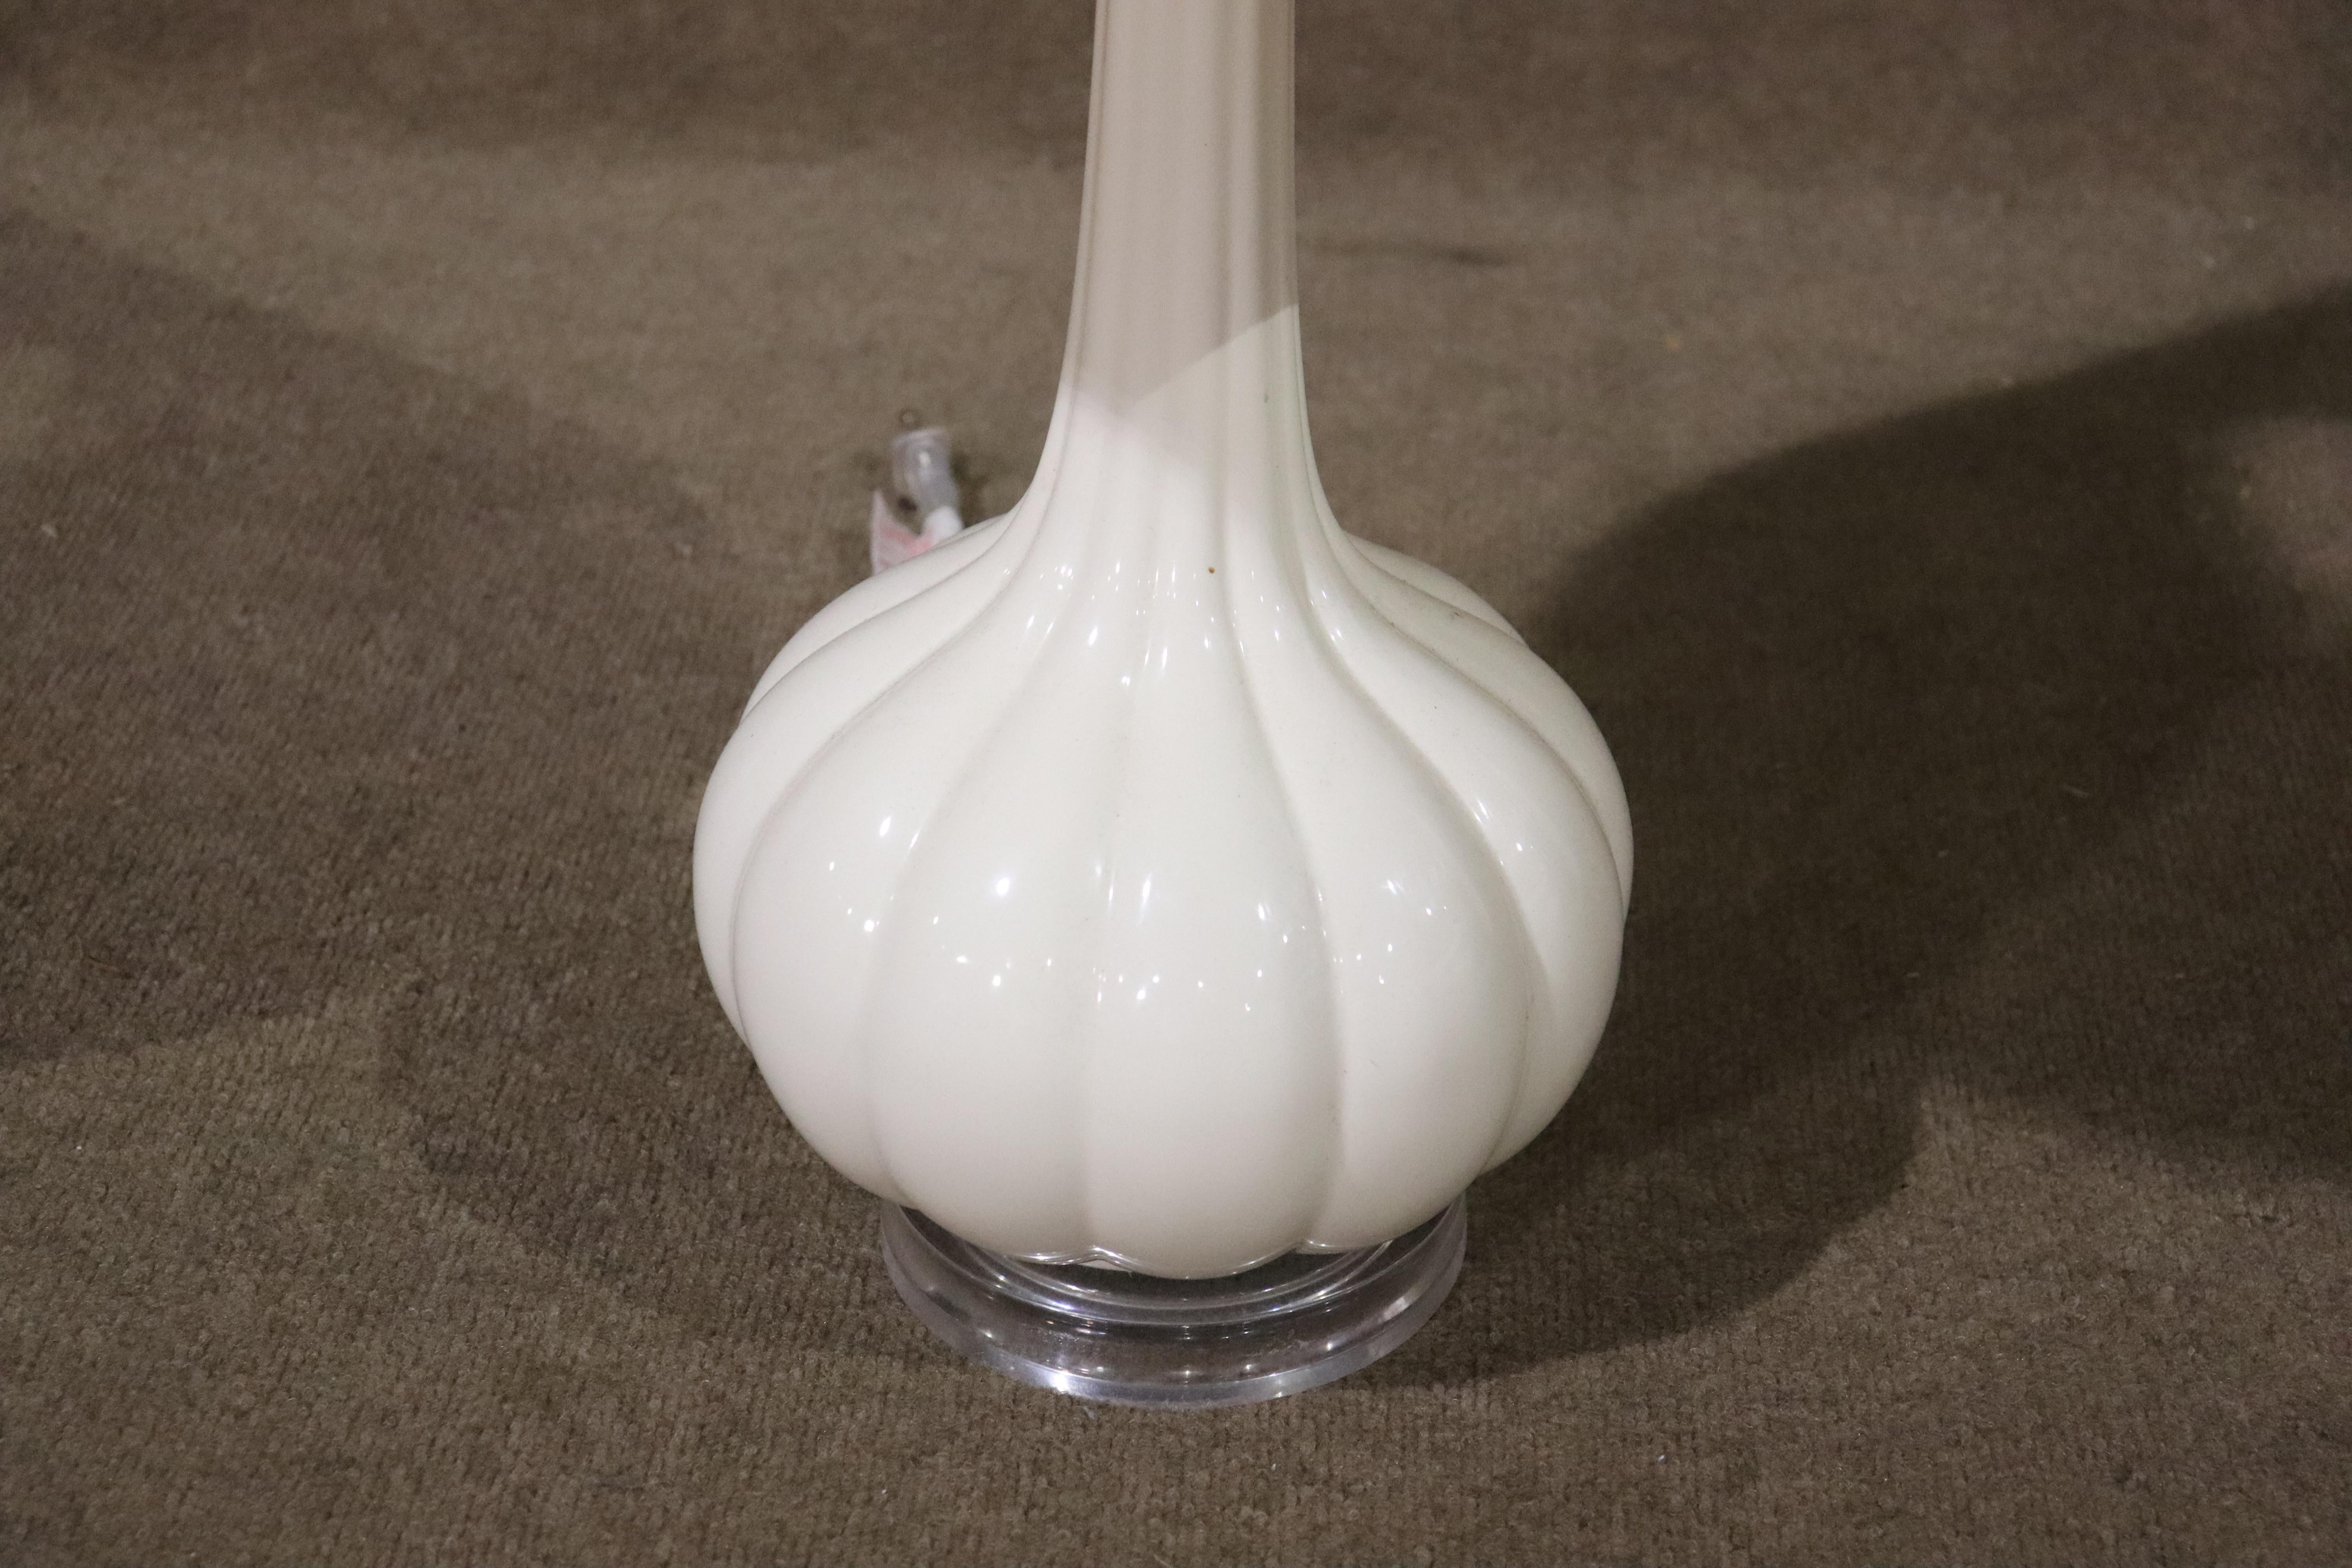 Lampe de table de style vintage avec un corps en forme de coquille Saint-Jacques sur une base en lucite.
Veuillez confirmer le lieu NY ou NJ